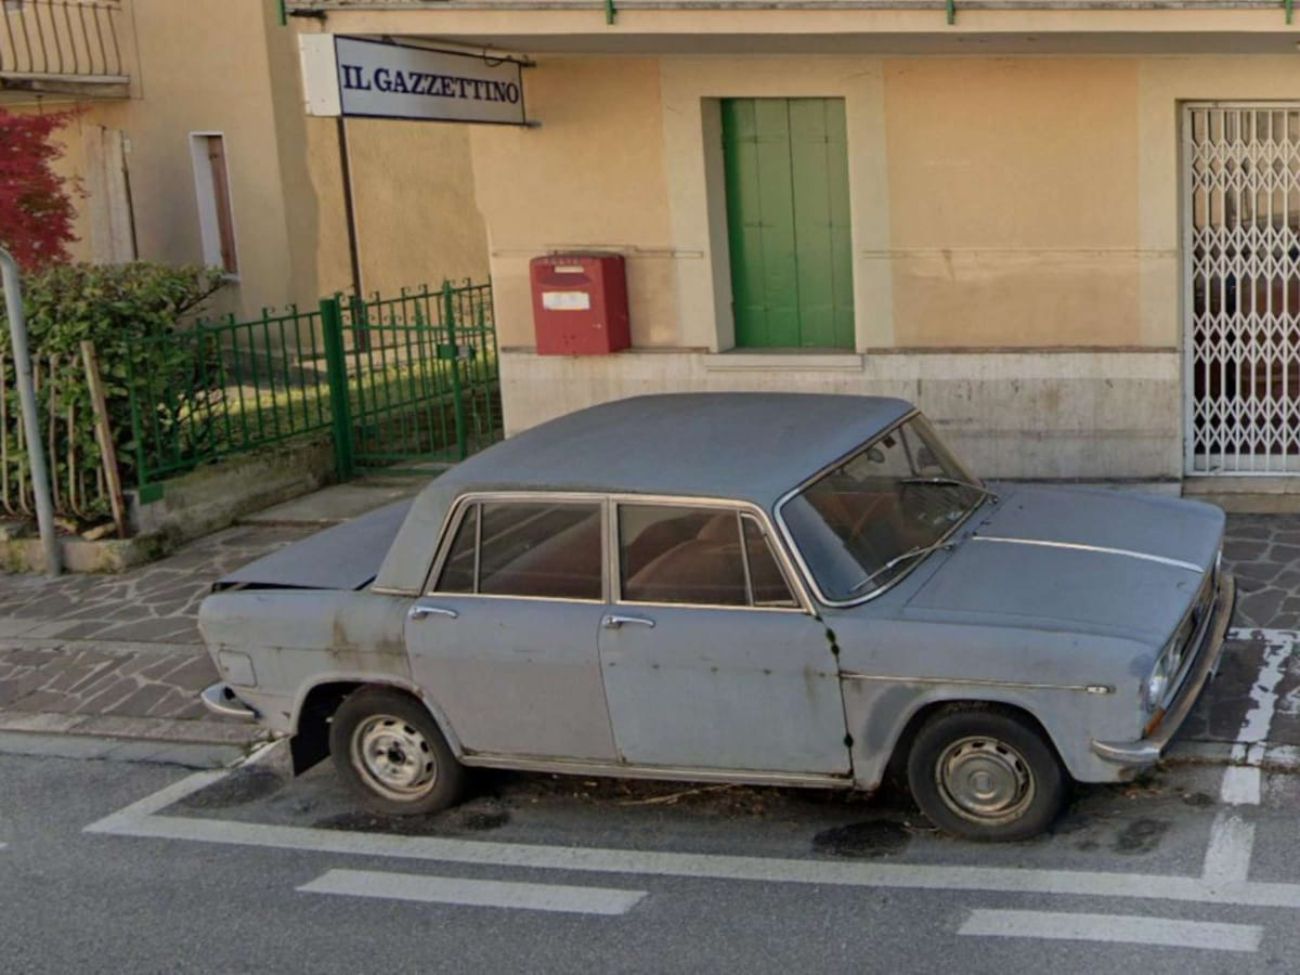 Declaran monumento un coche aparcado durante casi 50 años en el mismo lugar